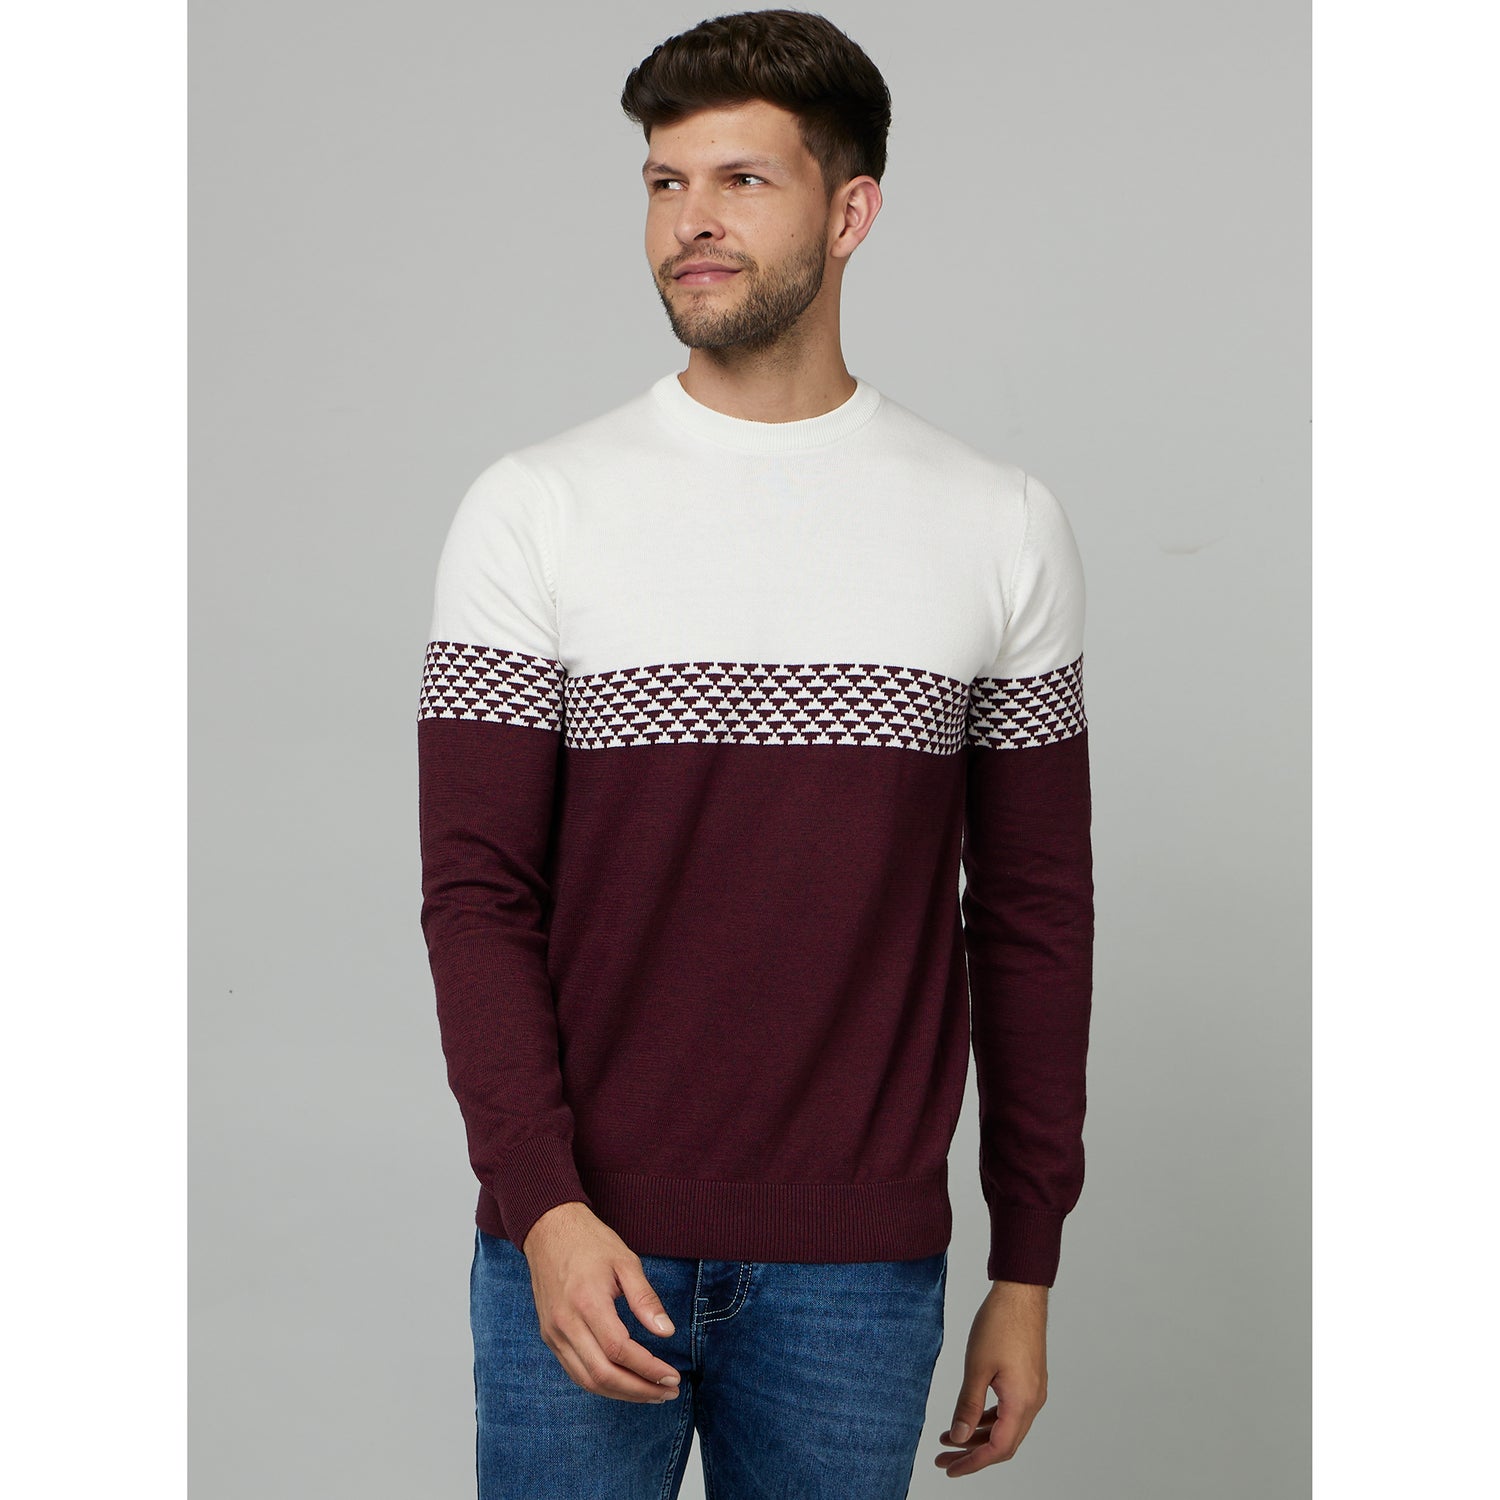 Burgundy Colourblocked Round Neck Cotton Sweatshirt (FEJAQ)